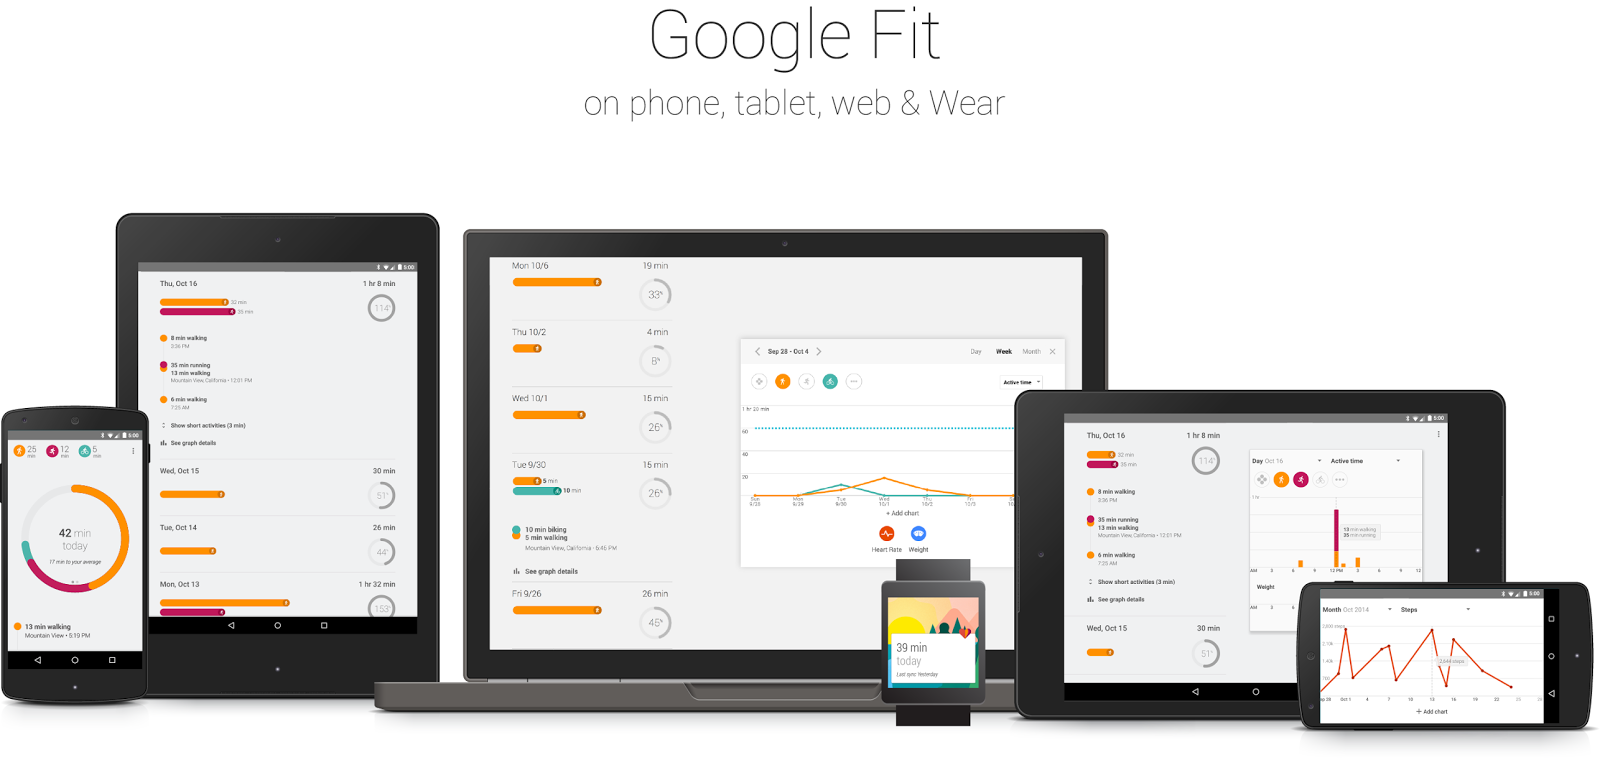 Корпорация Google представила Google Fit: сервис и приложение для мониторинга здоровья пользователя